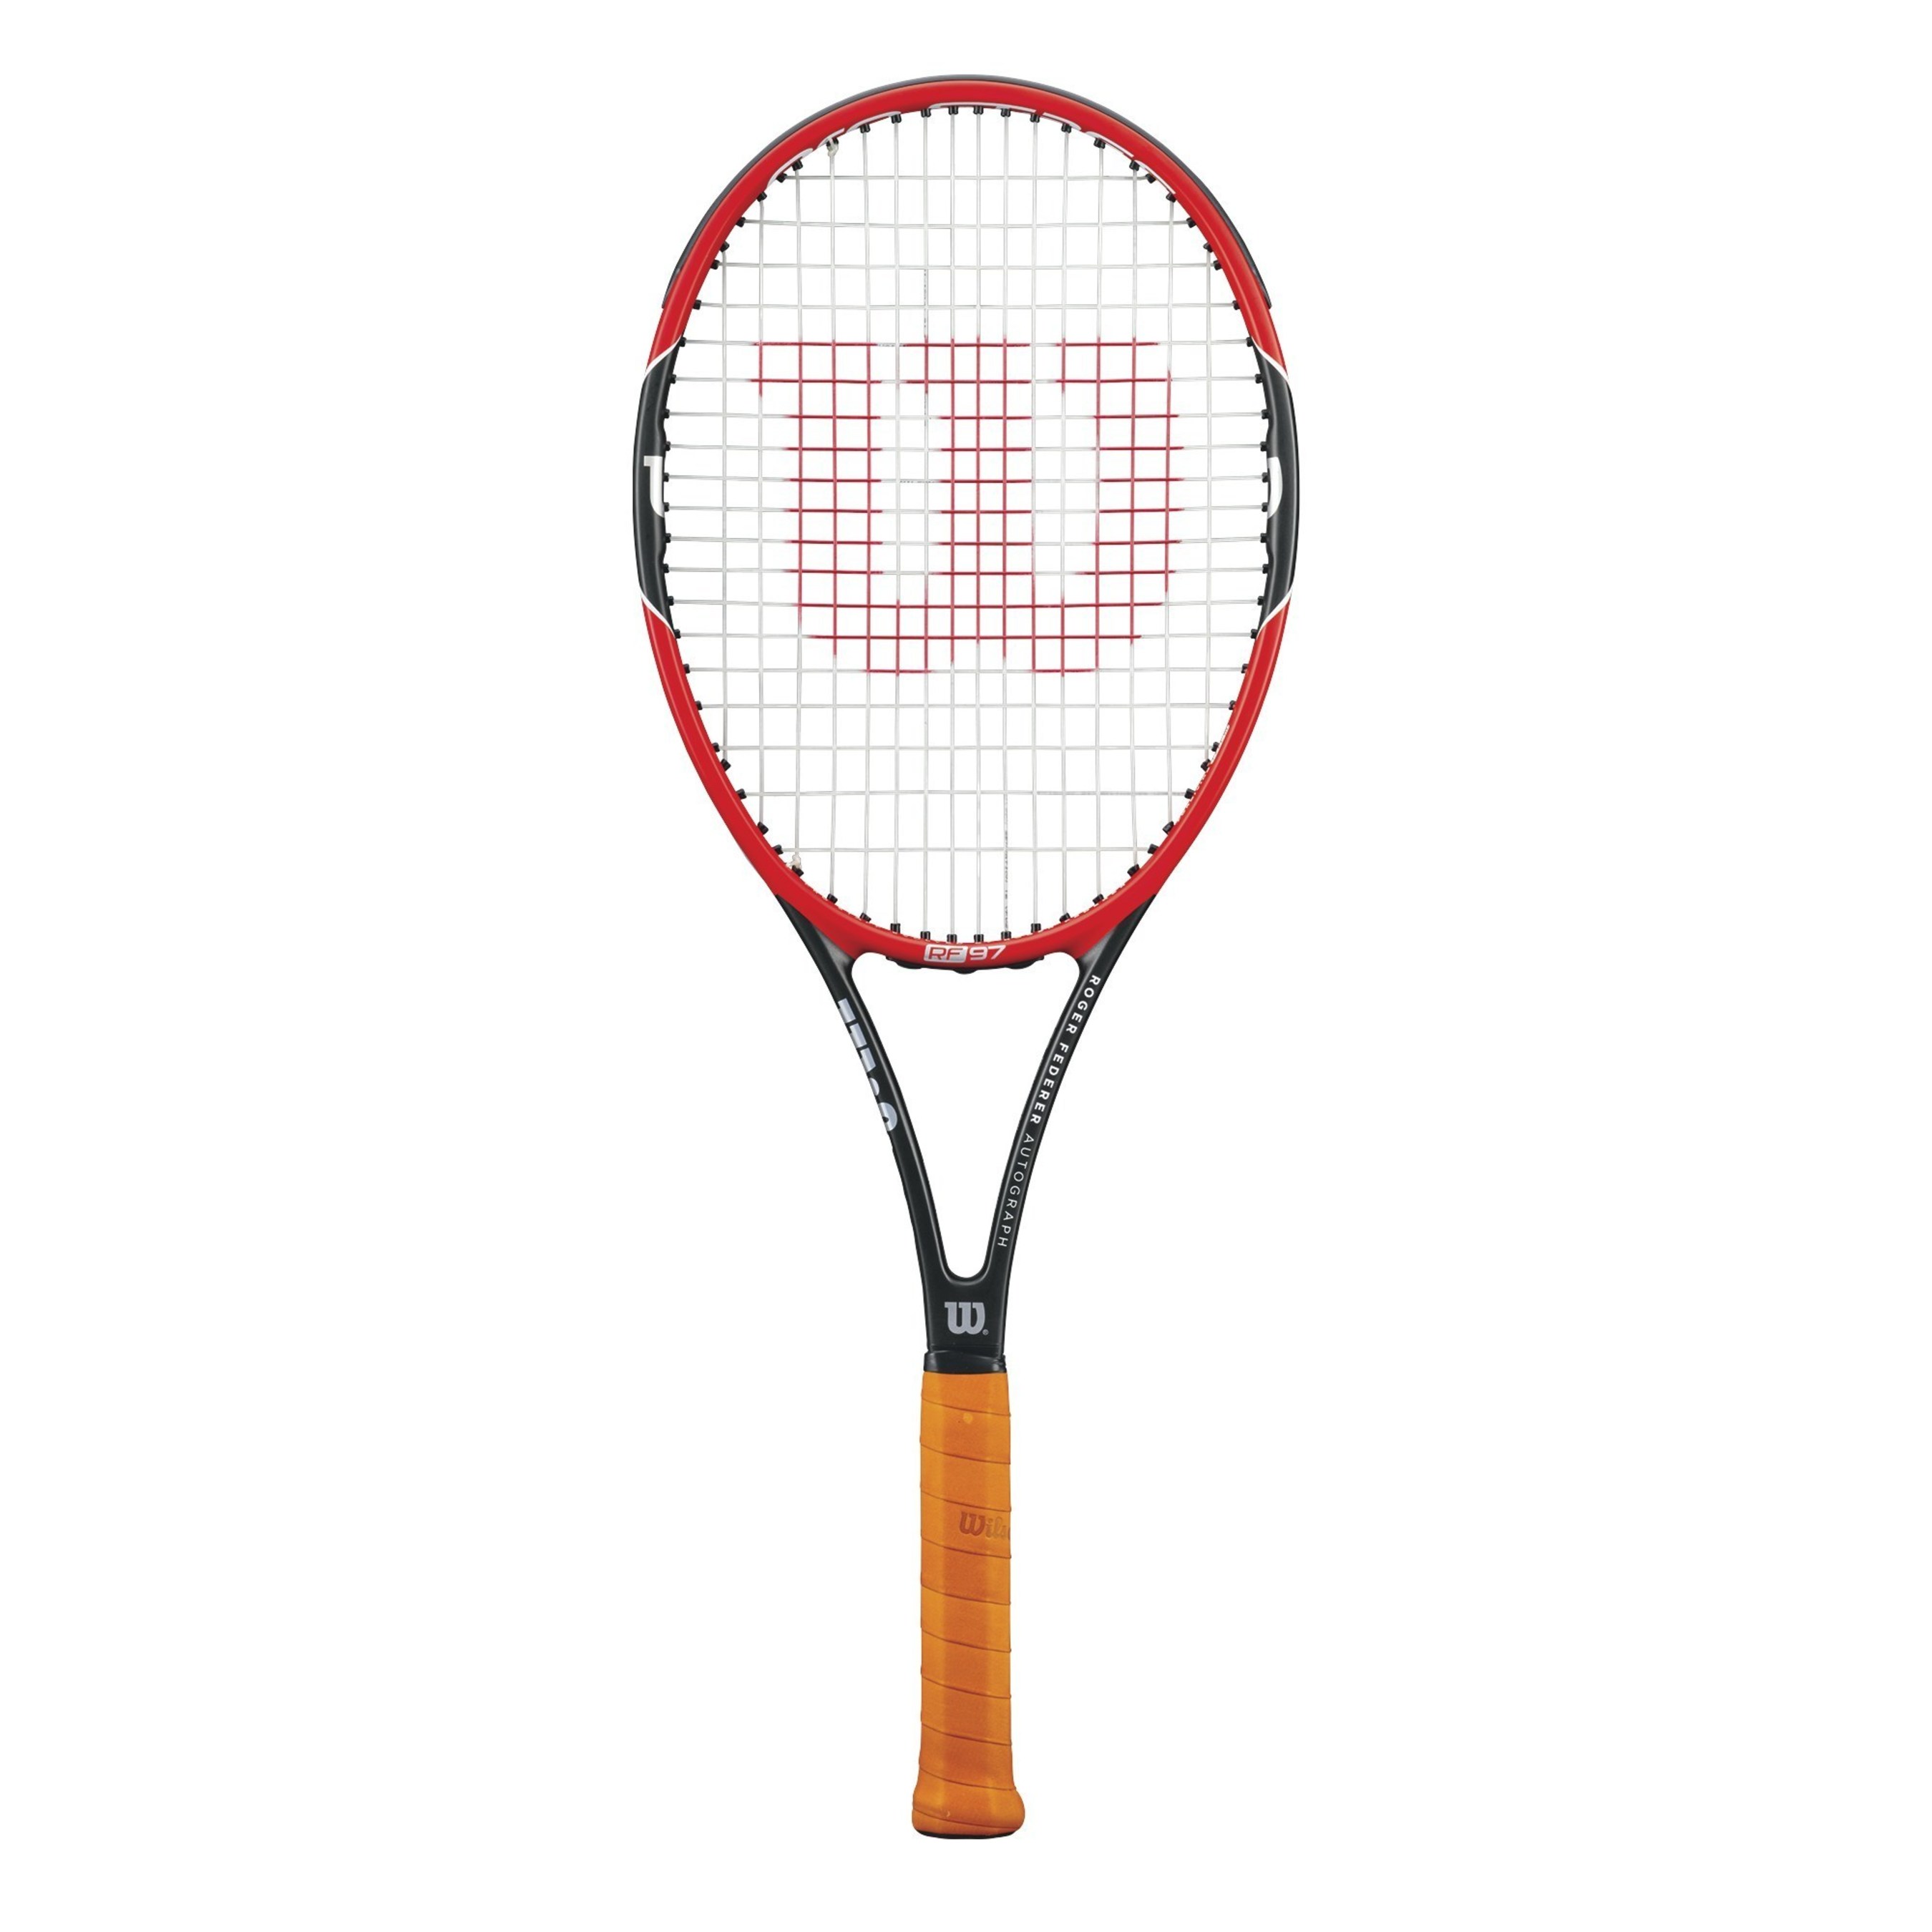 Dealer Warranty Reg $30 Wilson Federer Tennis Racquet Racket 4 3/8 